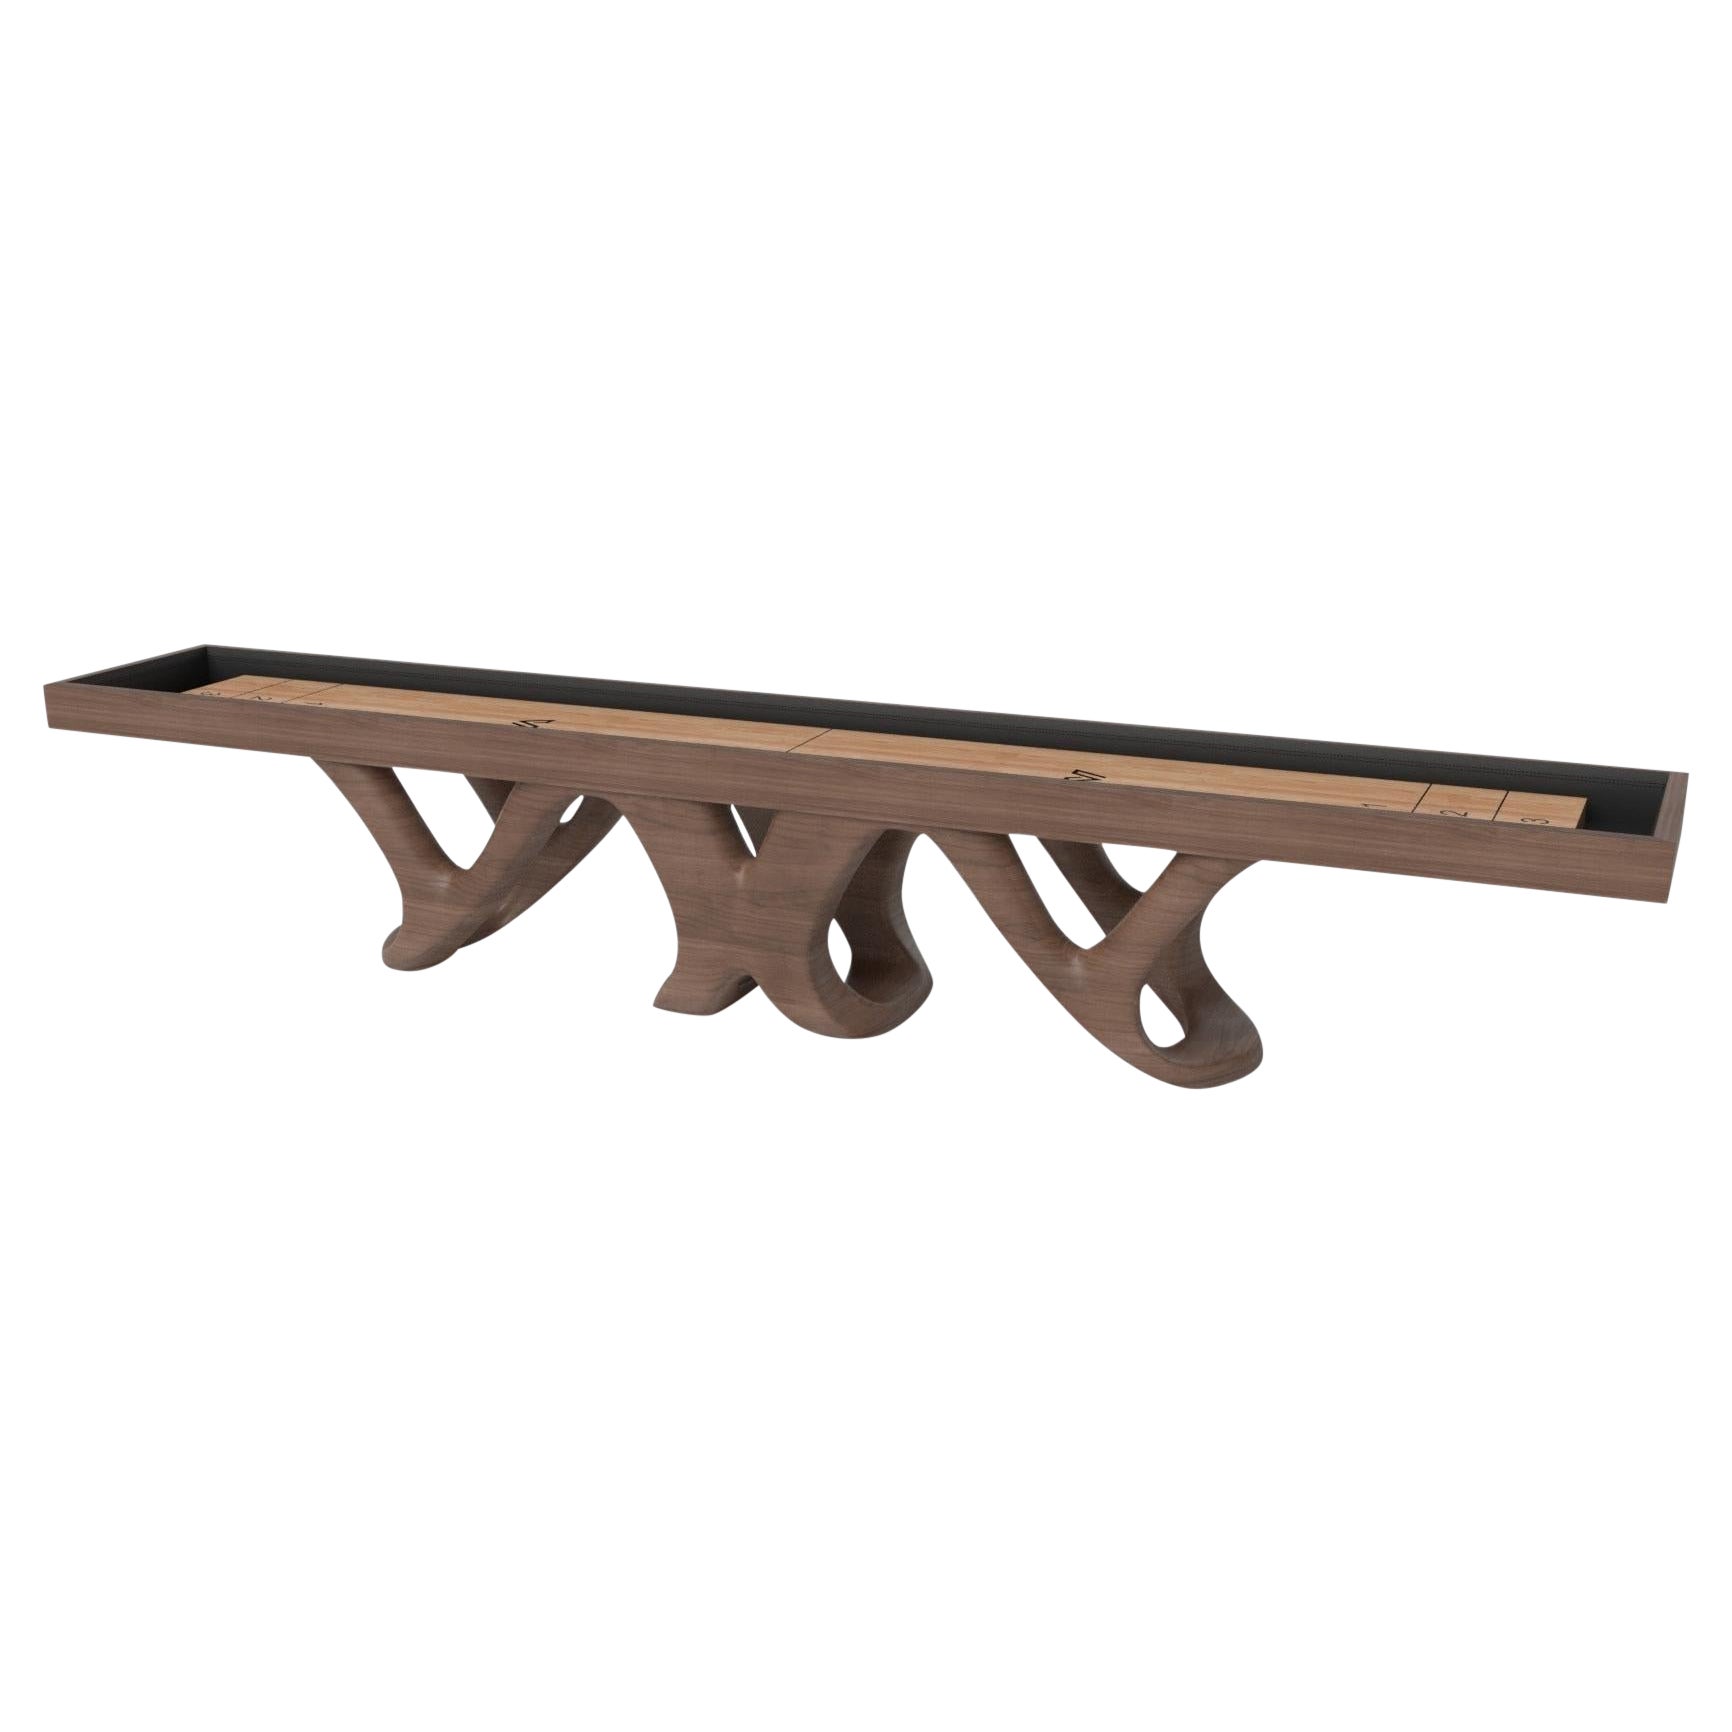 Tables de shuffleboard Elevate Customs Draco / Solid Walnut Wood en 18' - USA